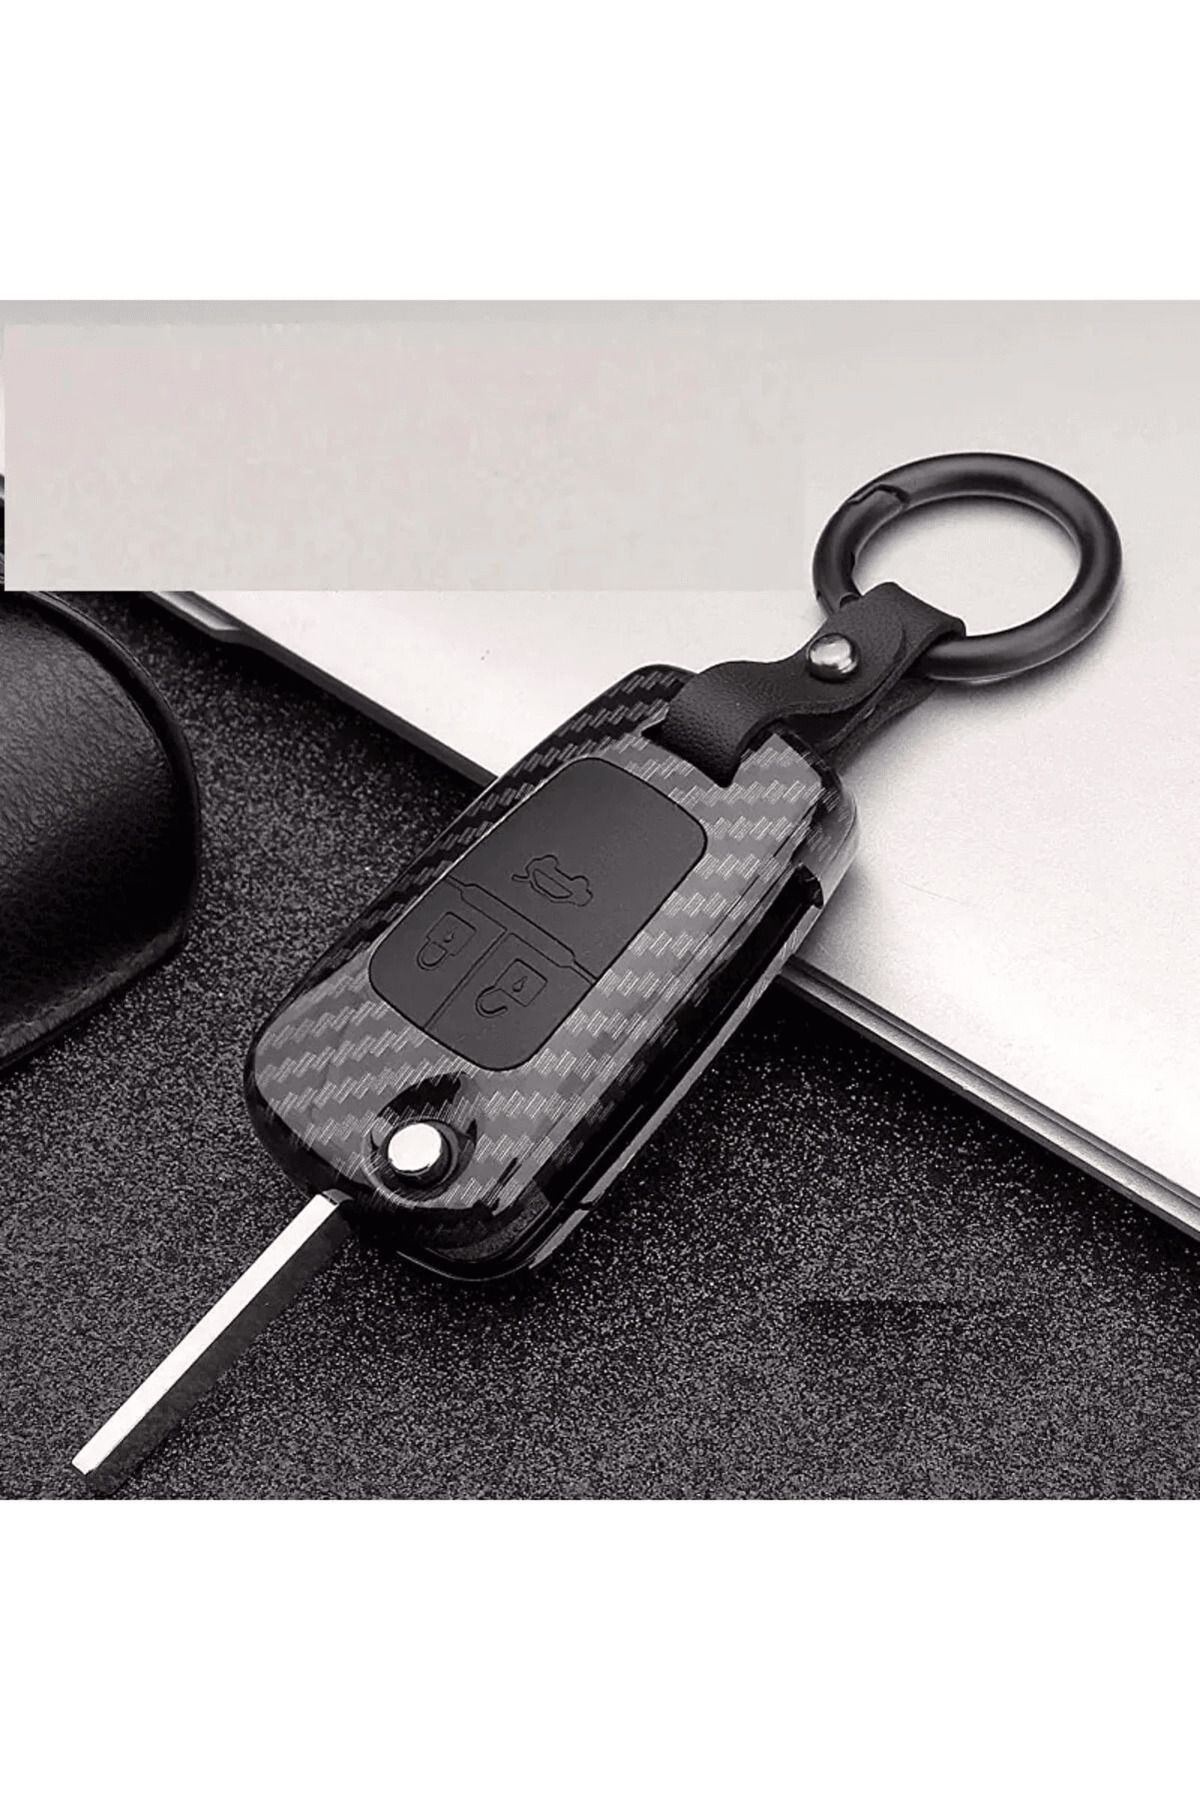 Skilit Chevrolet-opel Karbon Siyah Anahtar Kılıfı (3 Tuşlu)